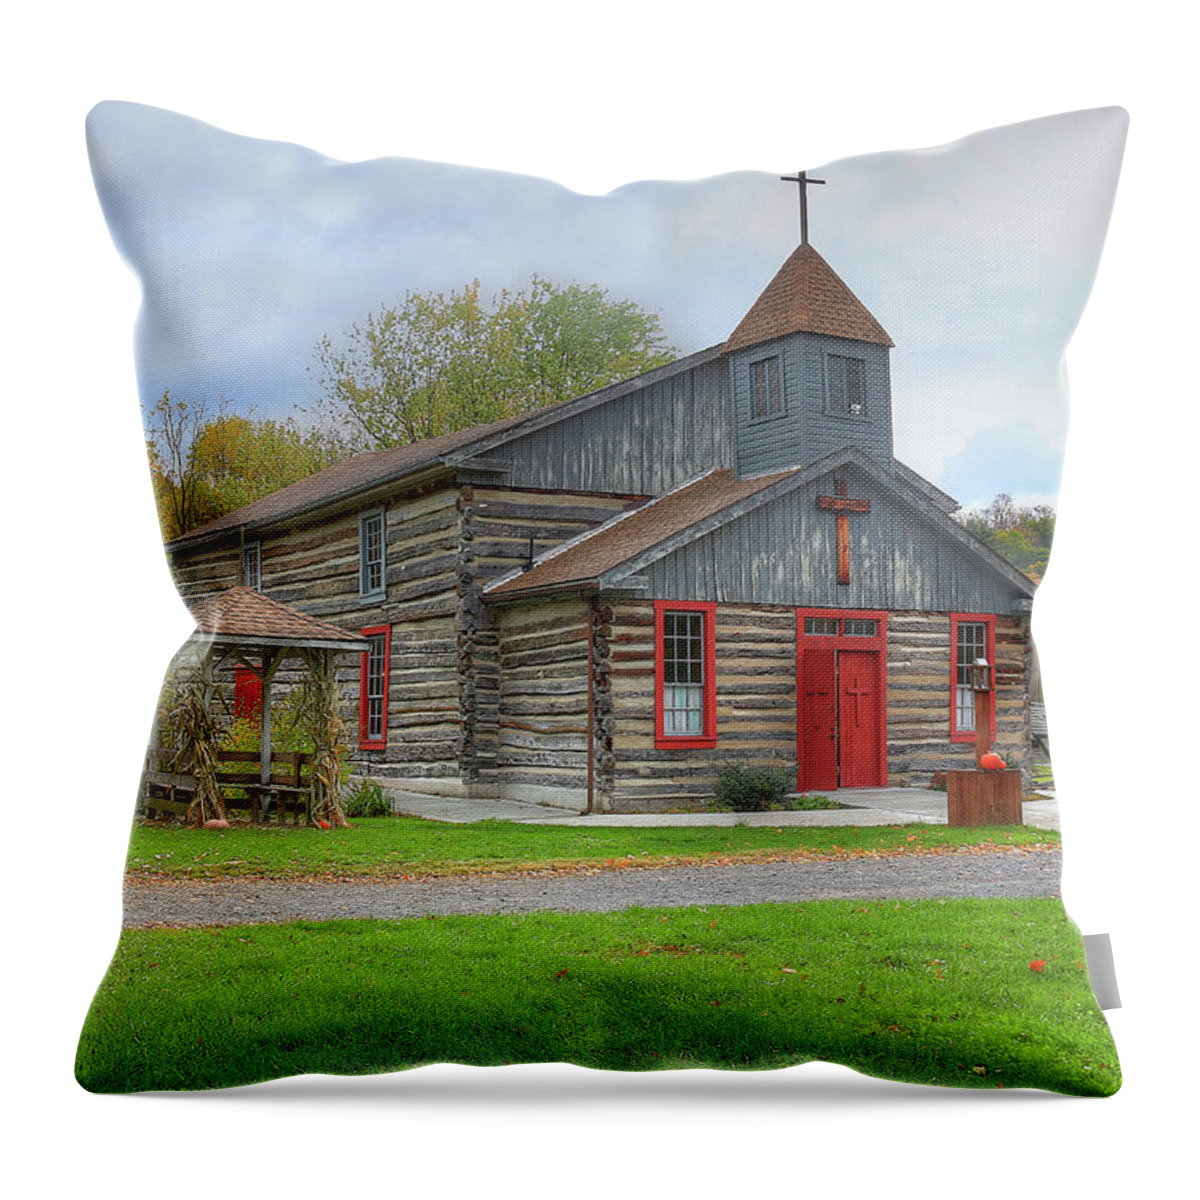 Church Throw Pillow featuring the digital art Bedford Village Church by Sharon Batdorf